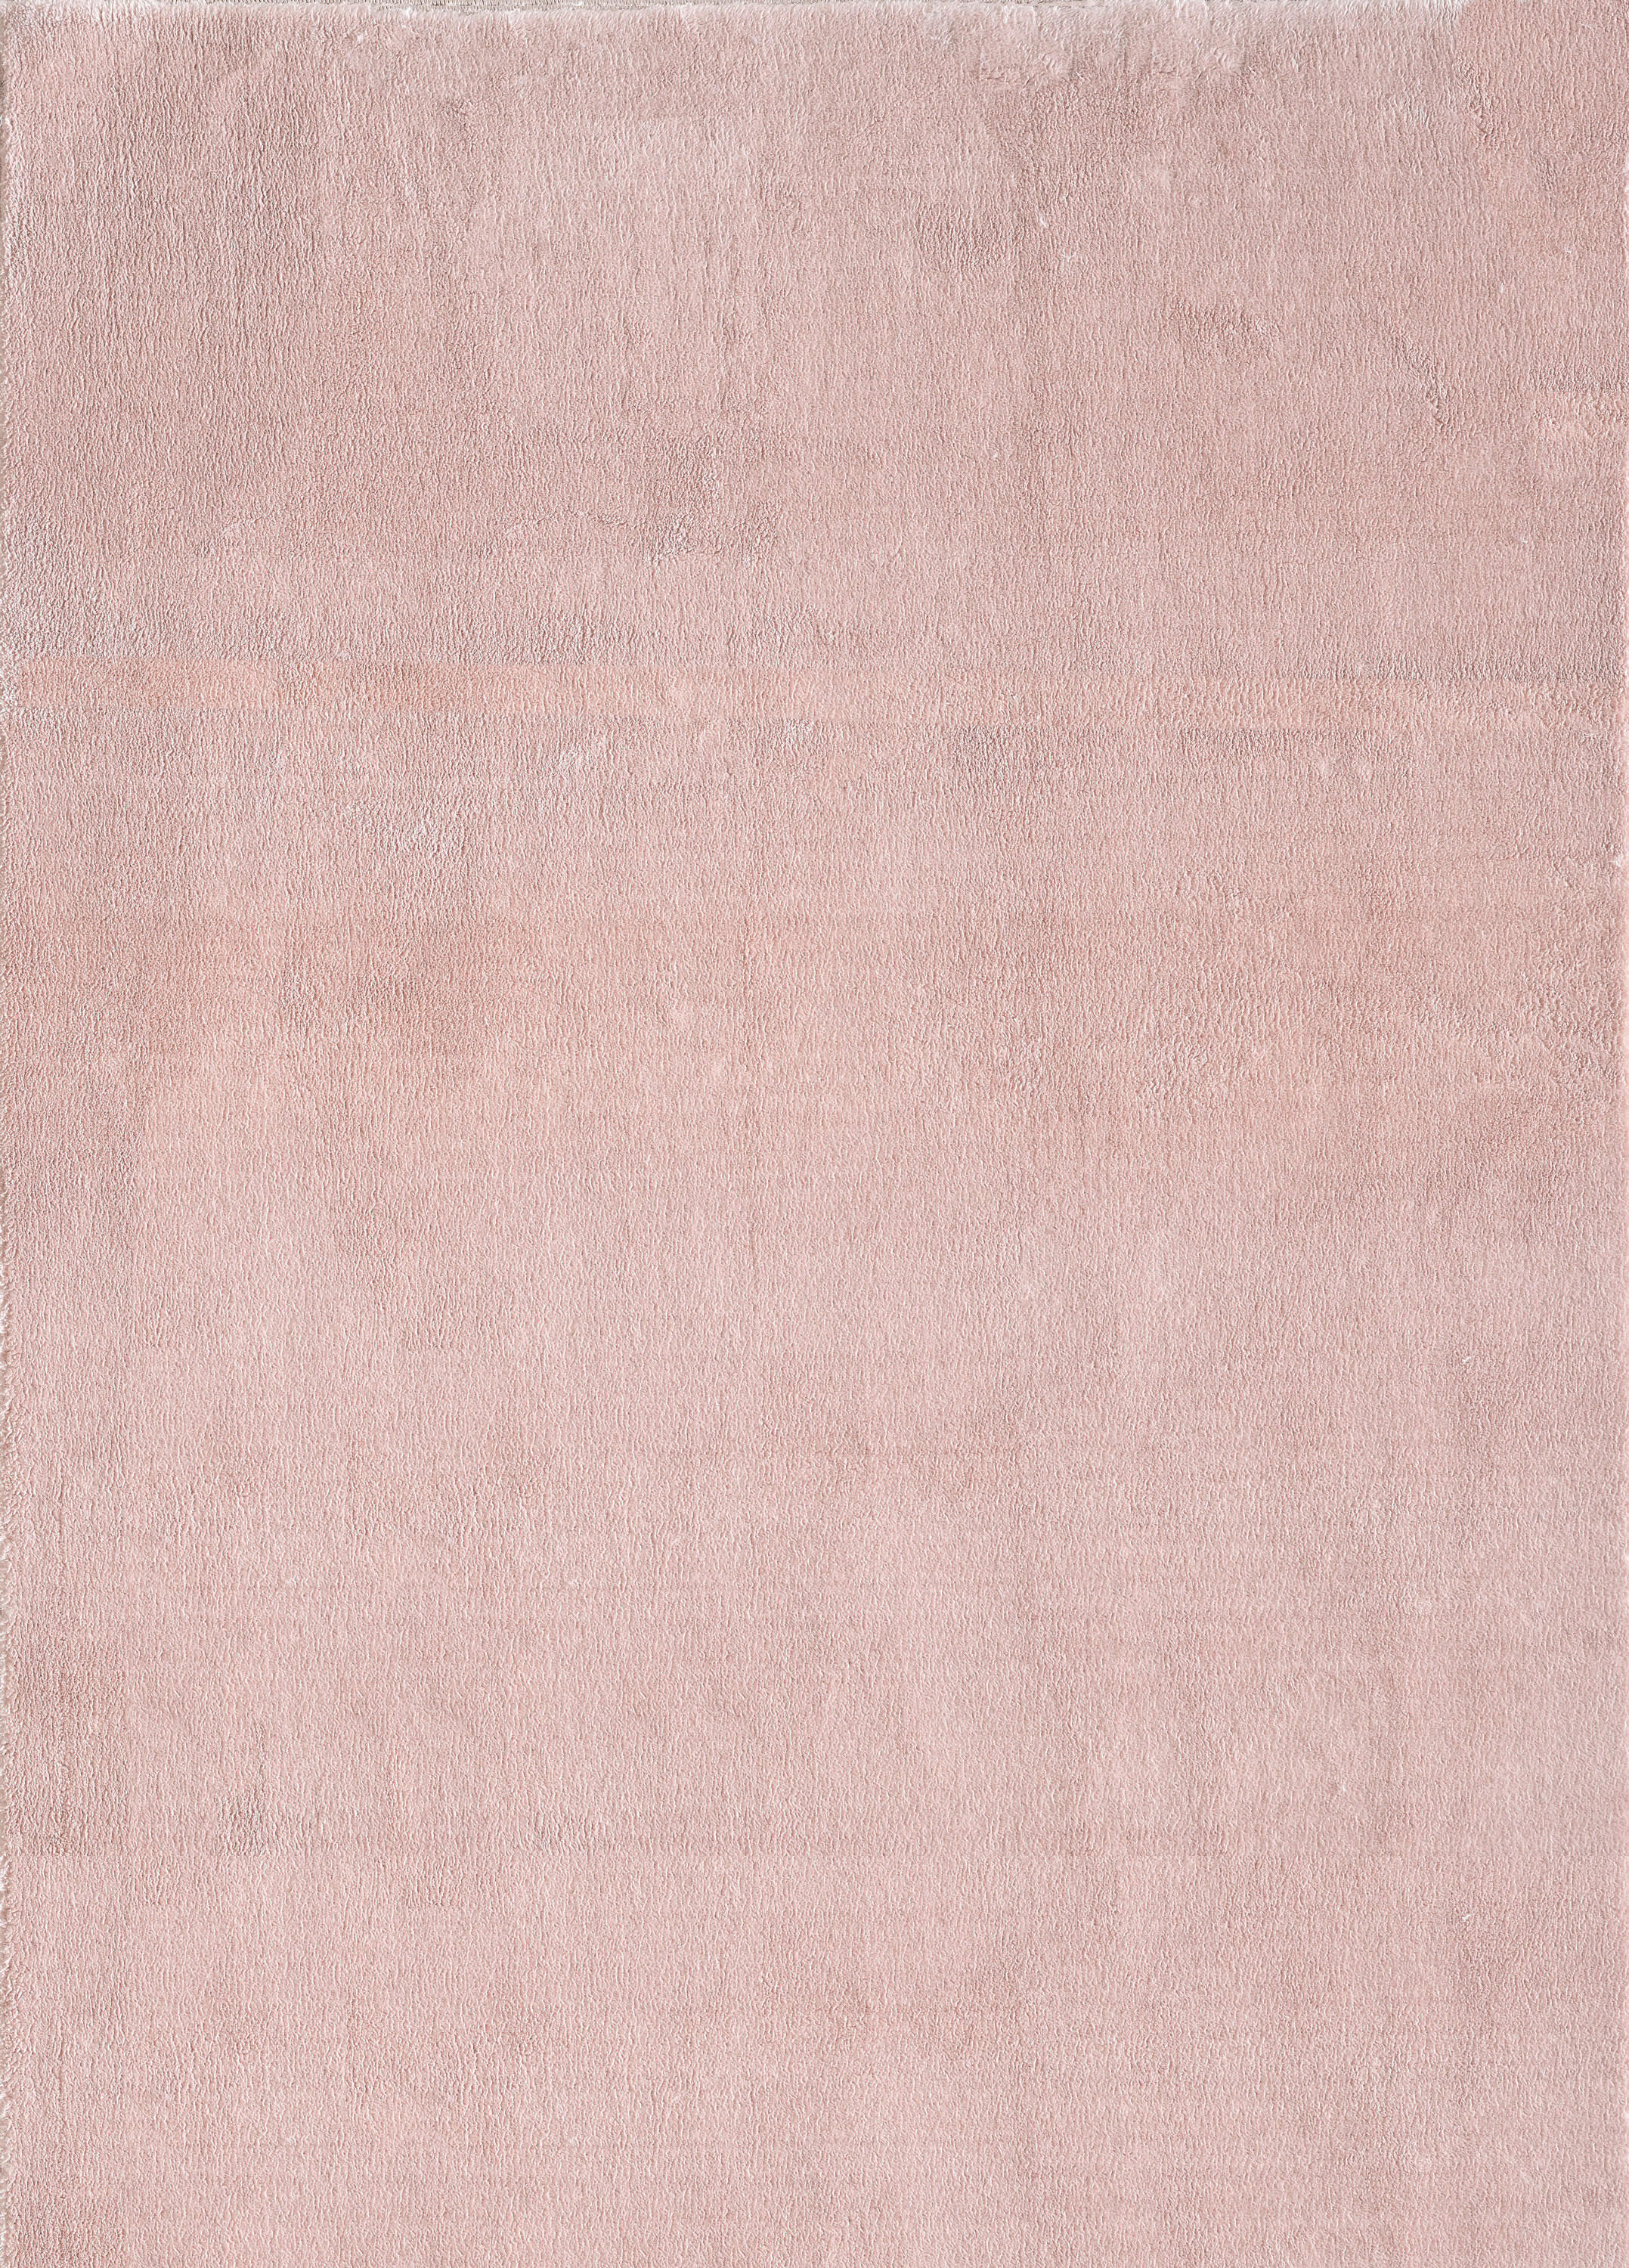 HOCHFLORTEPPICH 120/160 cm Catwalk  - Beige, Basics, Textil (120/160cm) - Novel